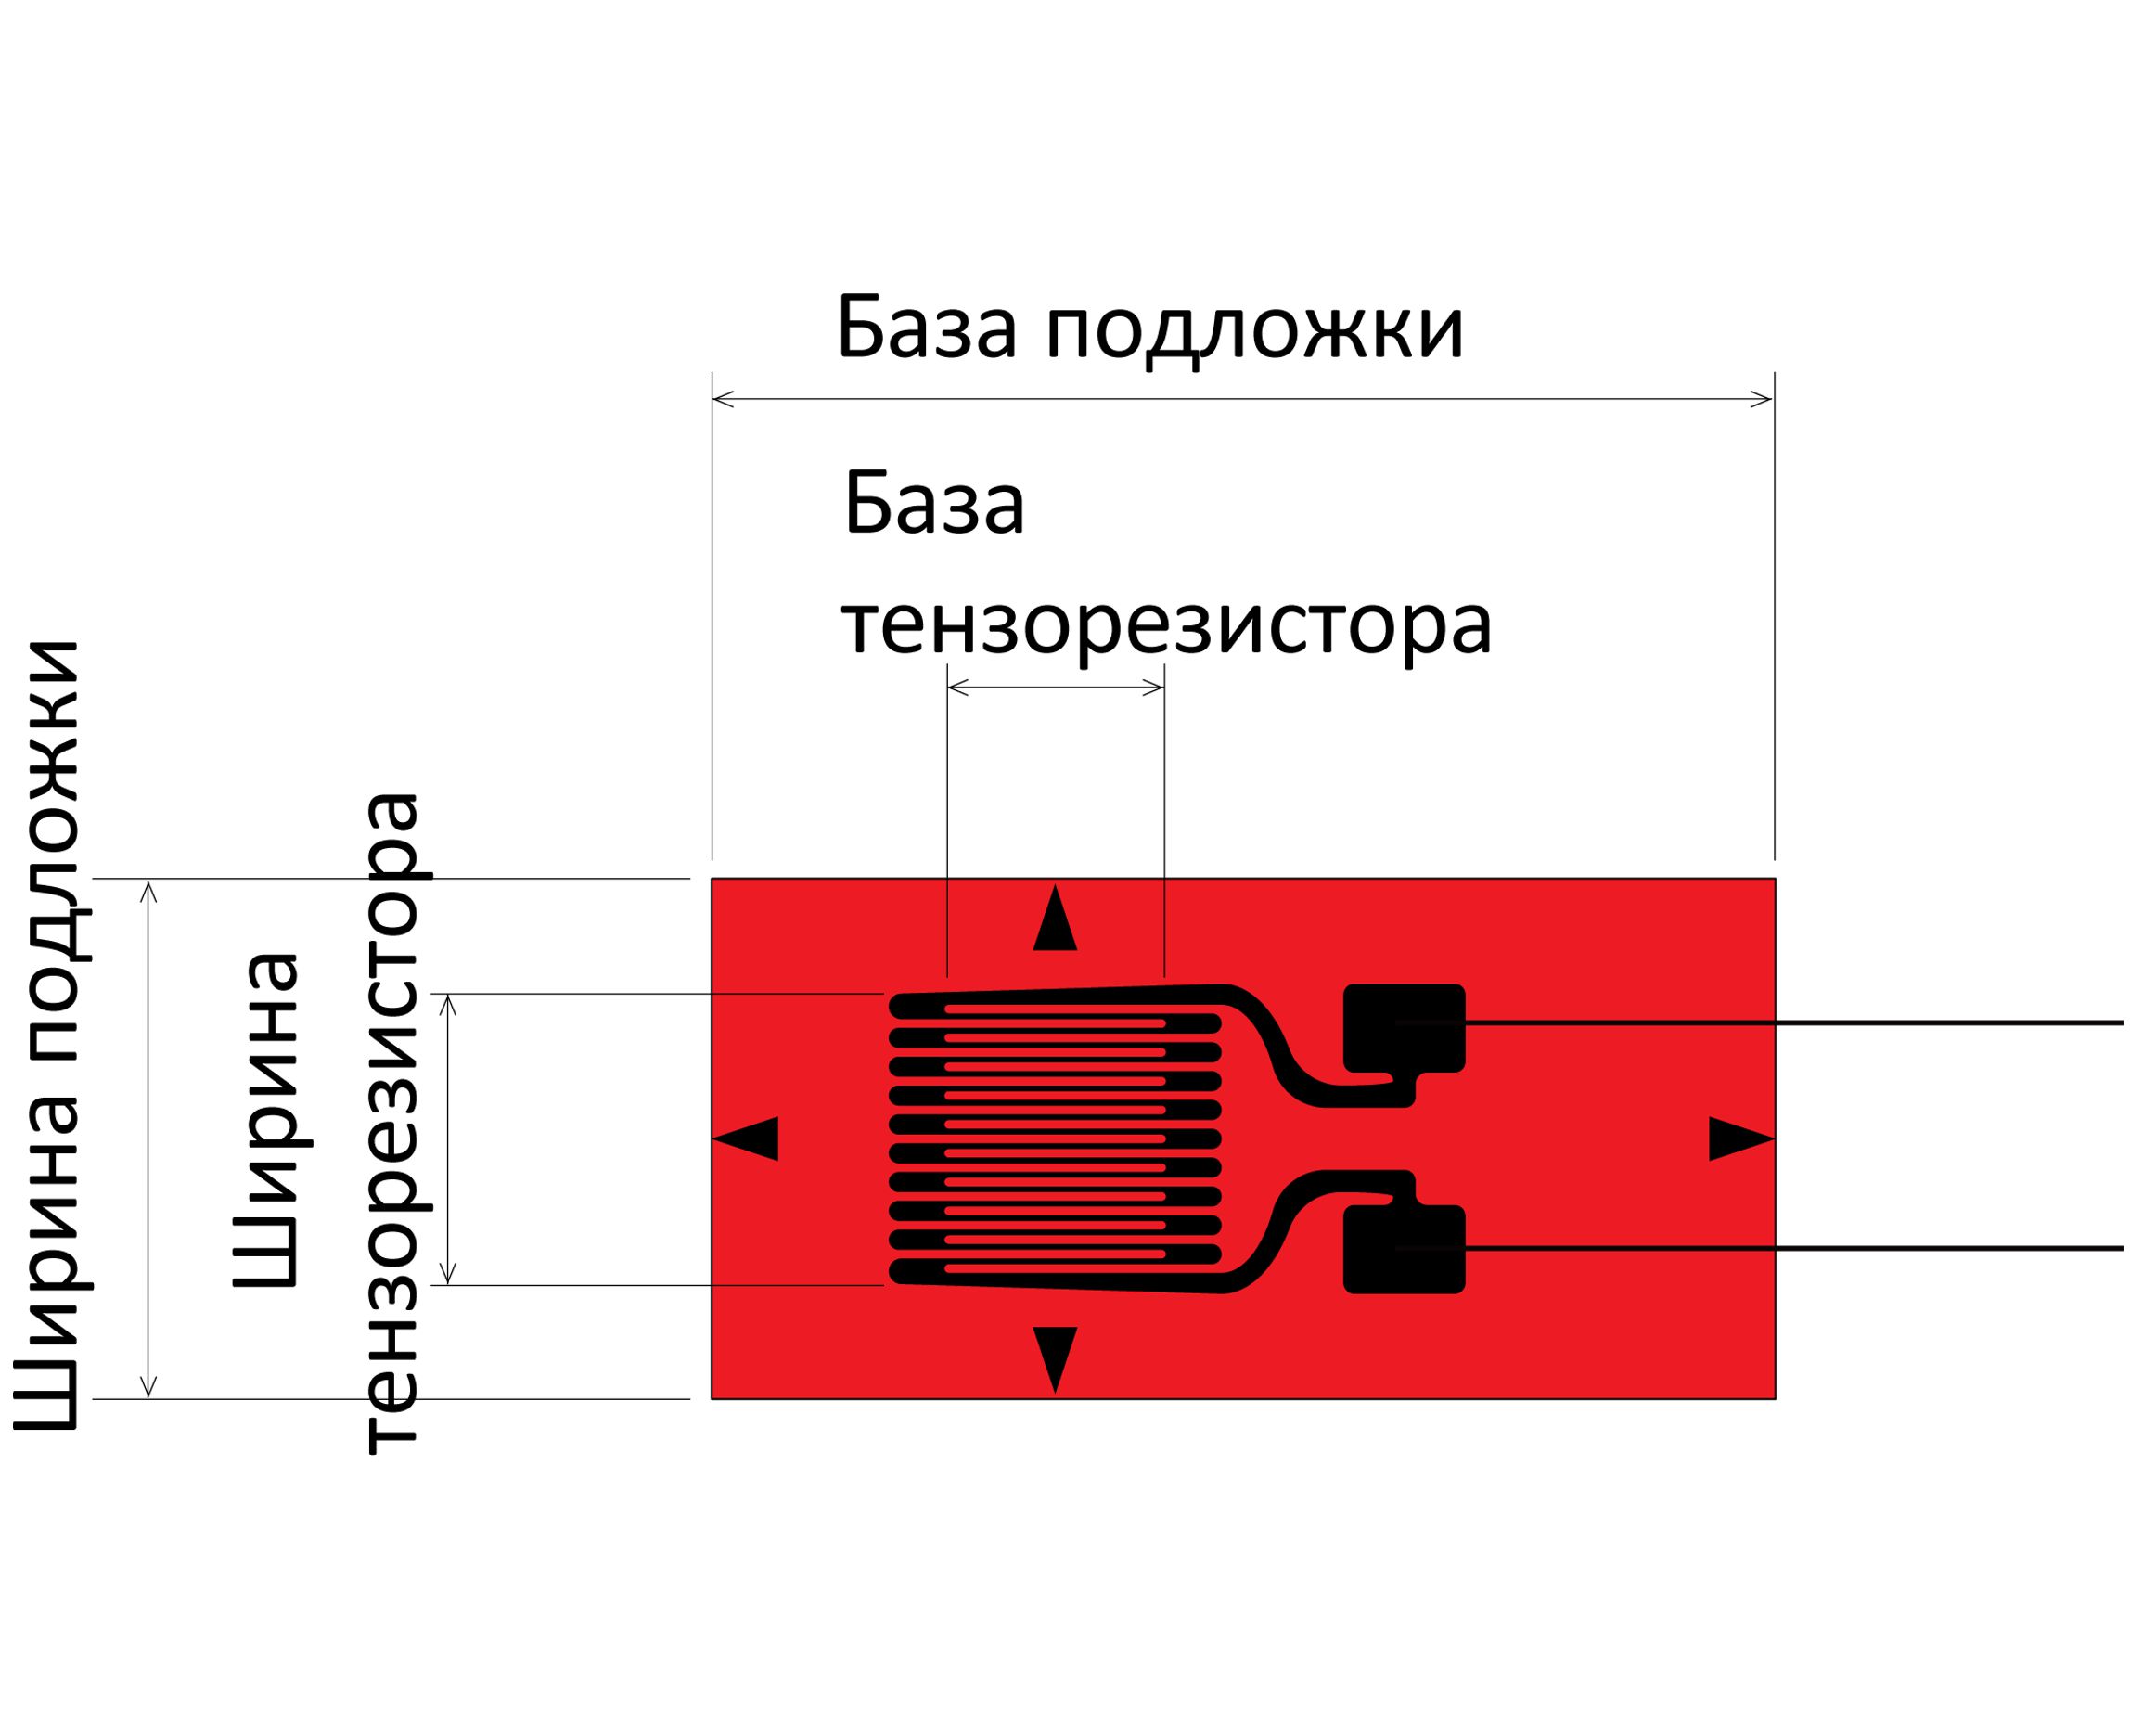 Тензорезисторы FLKB для работы в магнитном поле